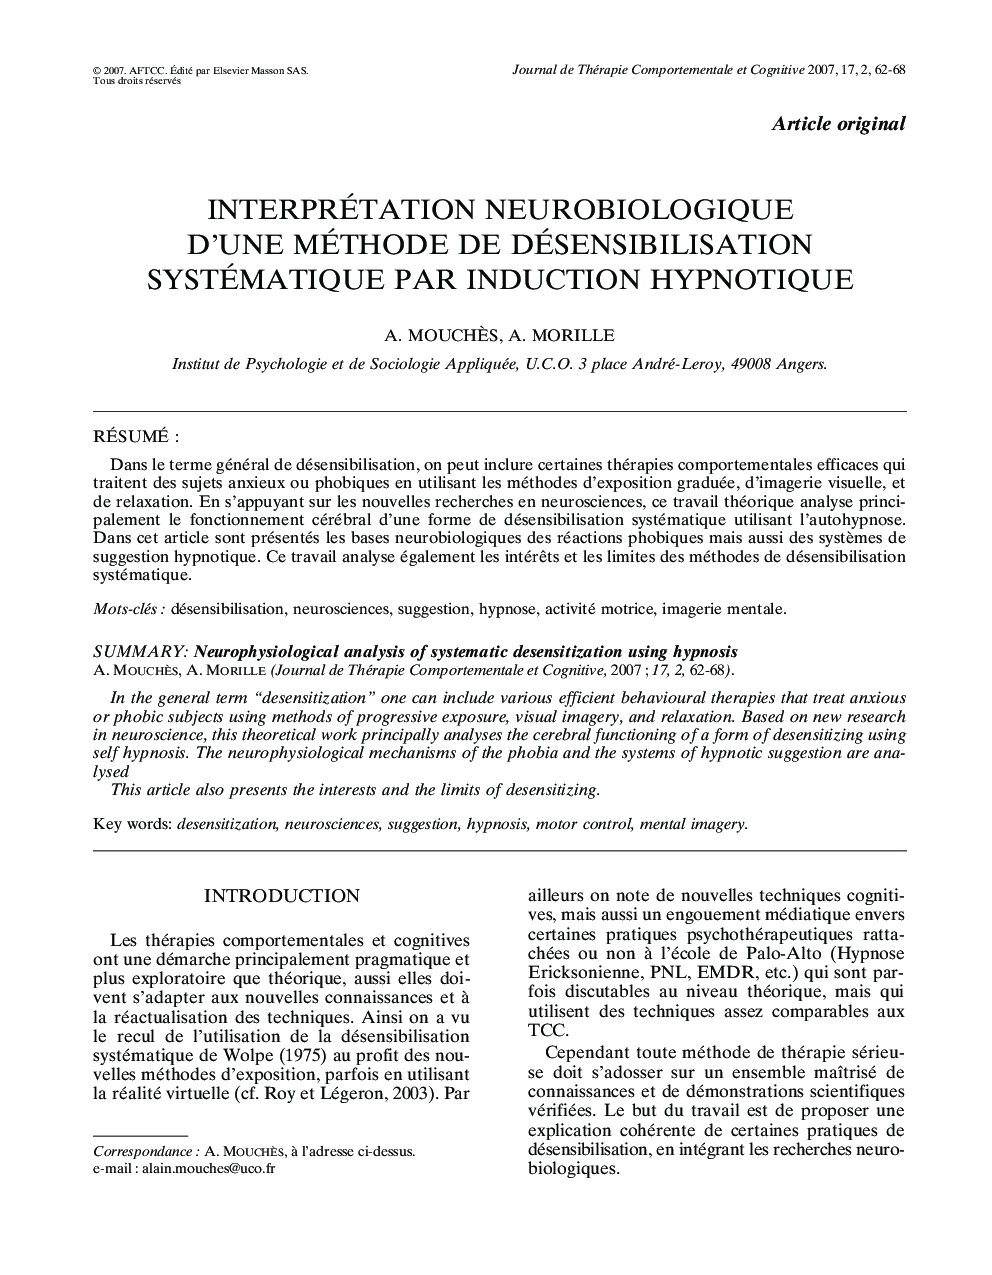 Interprétation neurobiologique d'une méthode de désensibilisation systématique par induction hypnotique